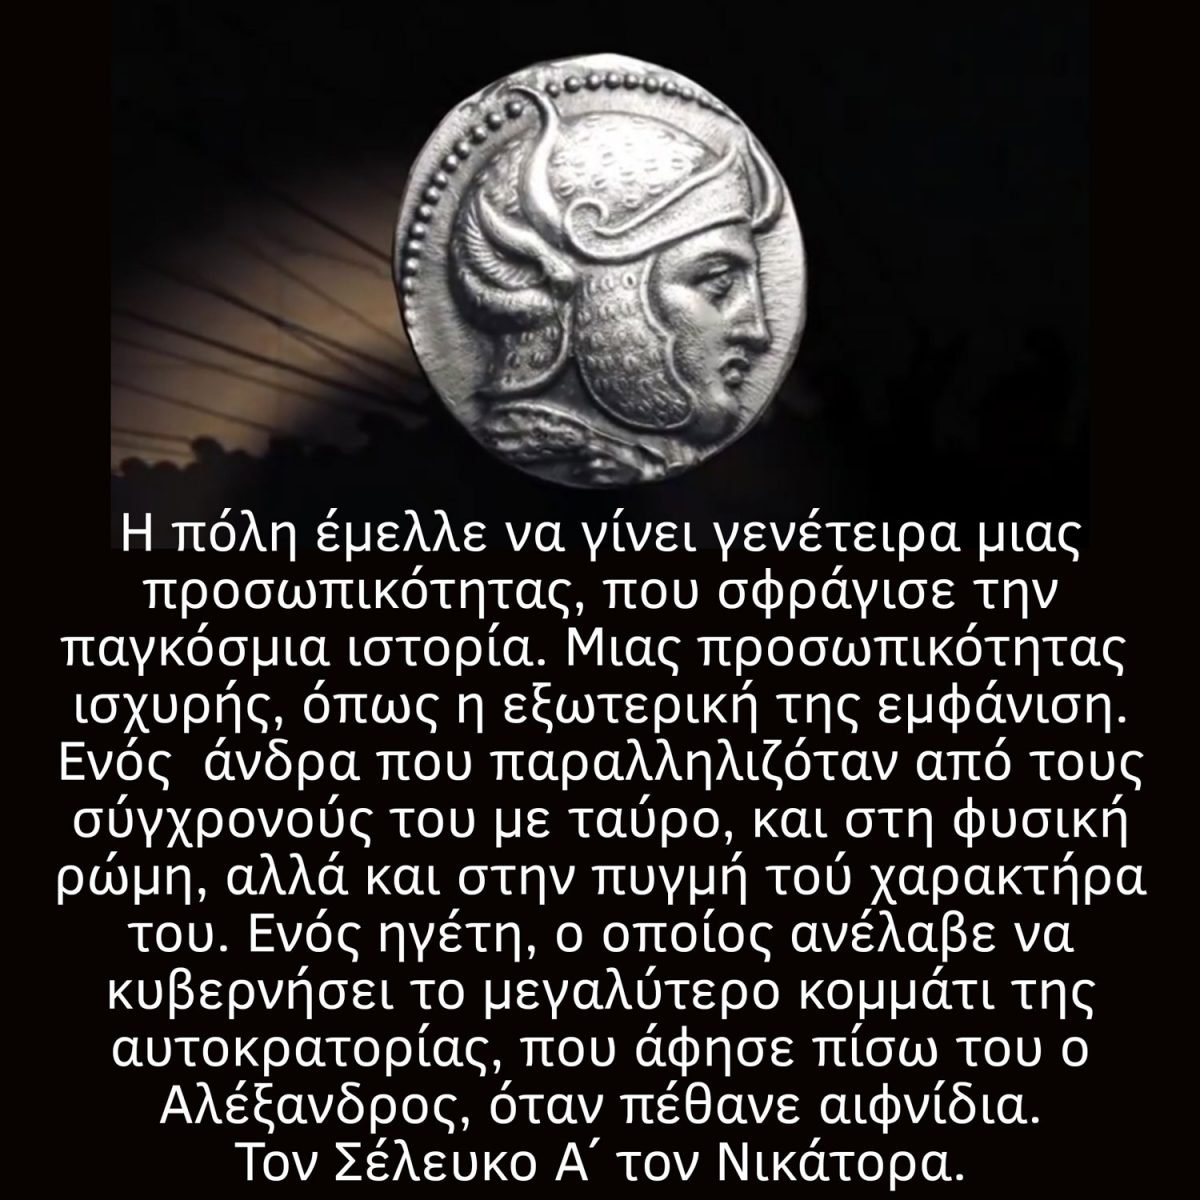 Σέλευκος Α' ο Νικάτωρ: η ιστορική διαδρομή του.